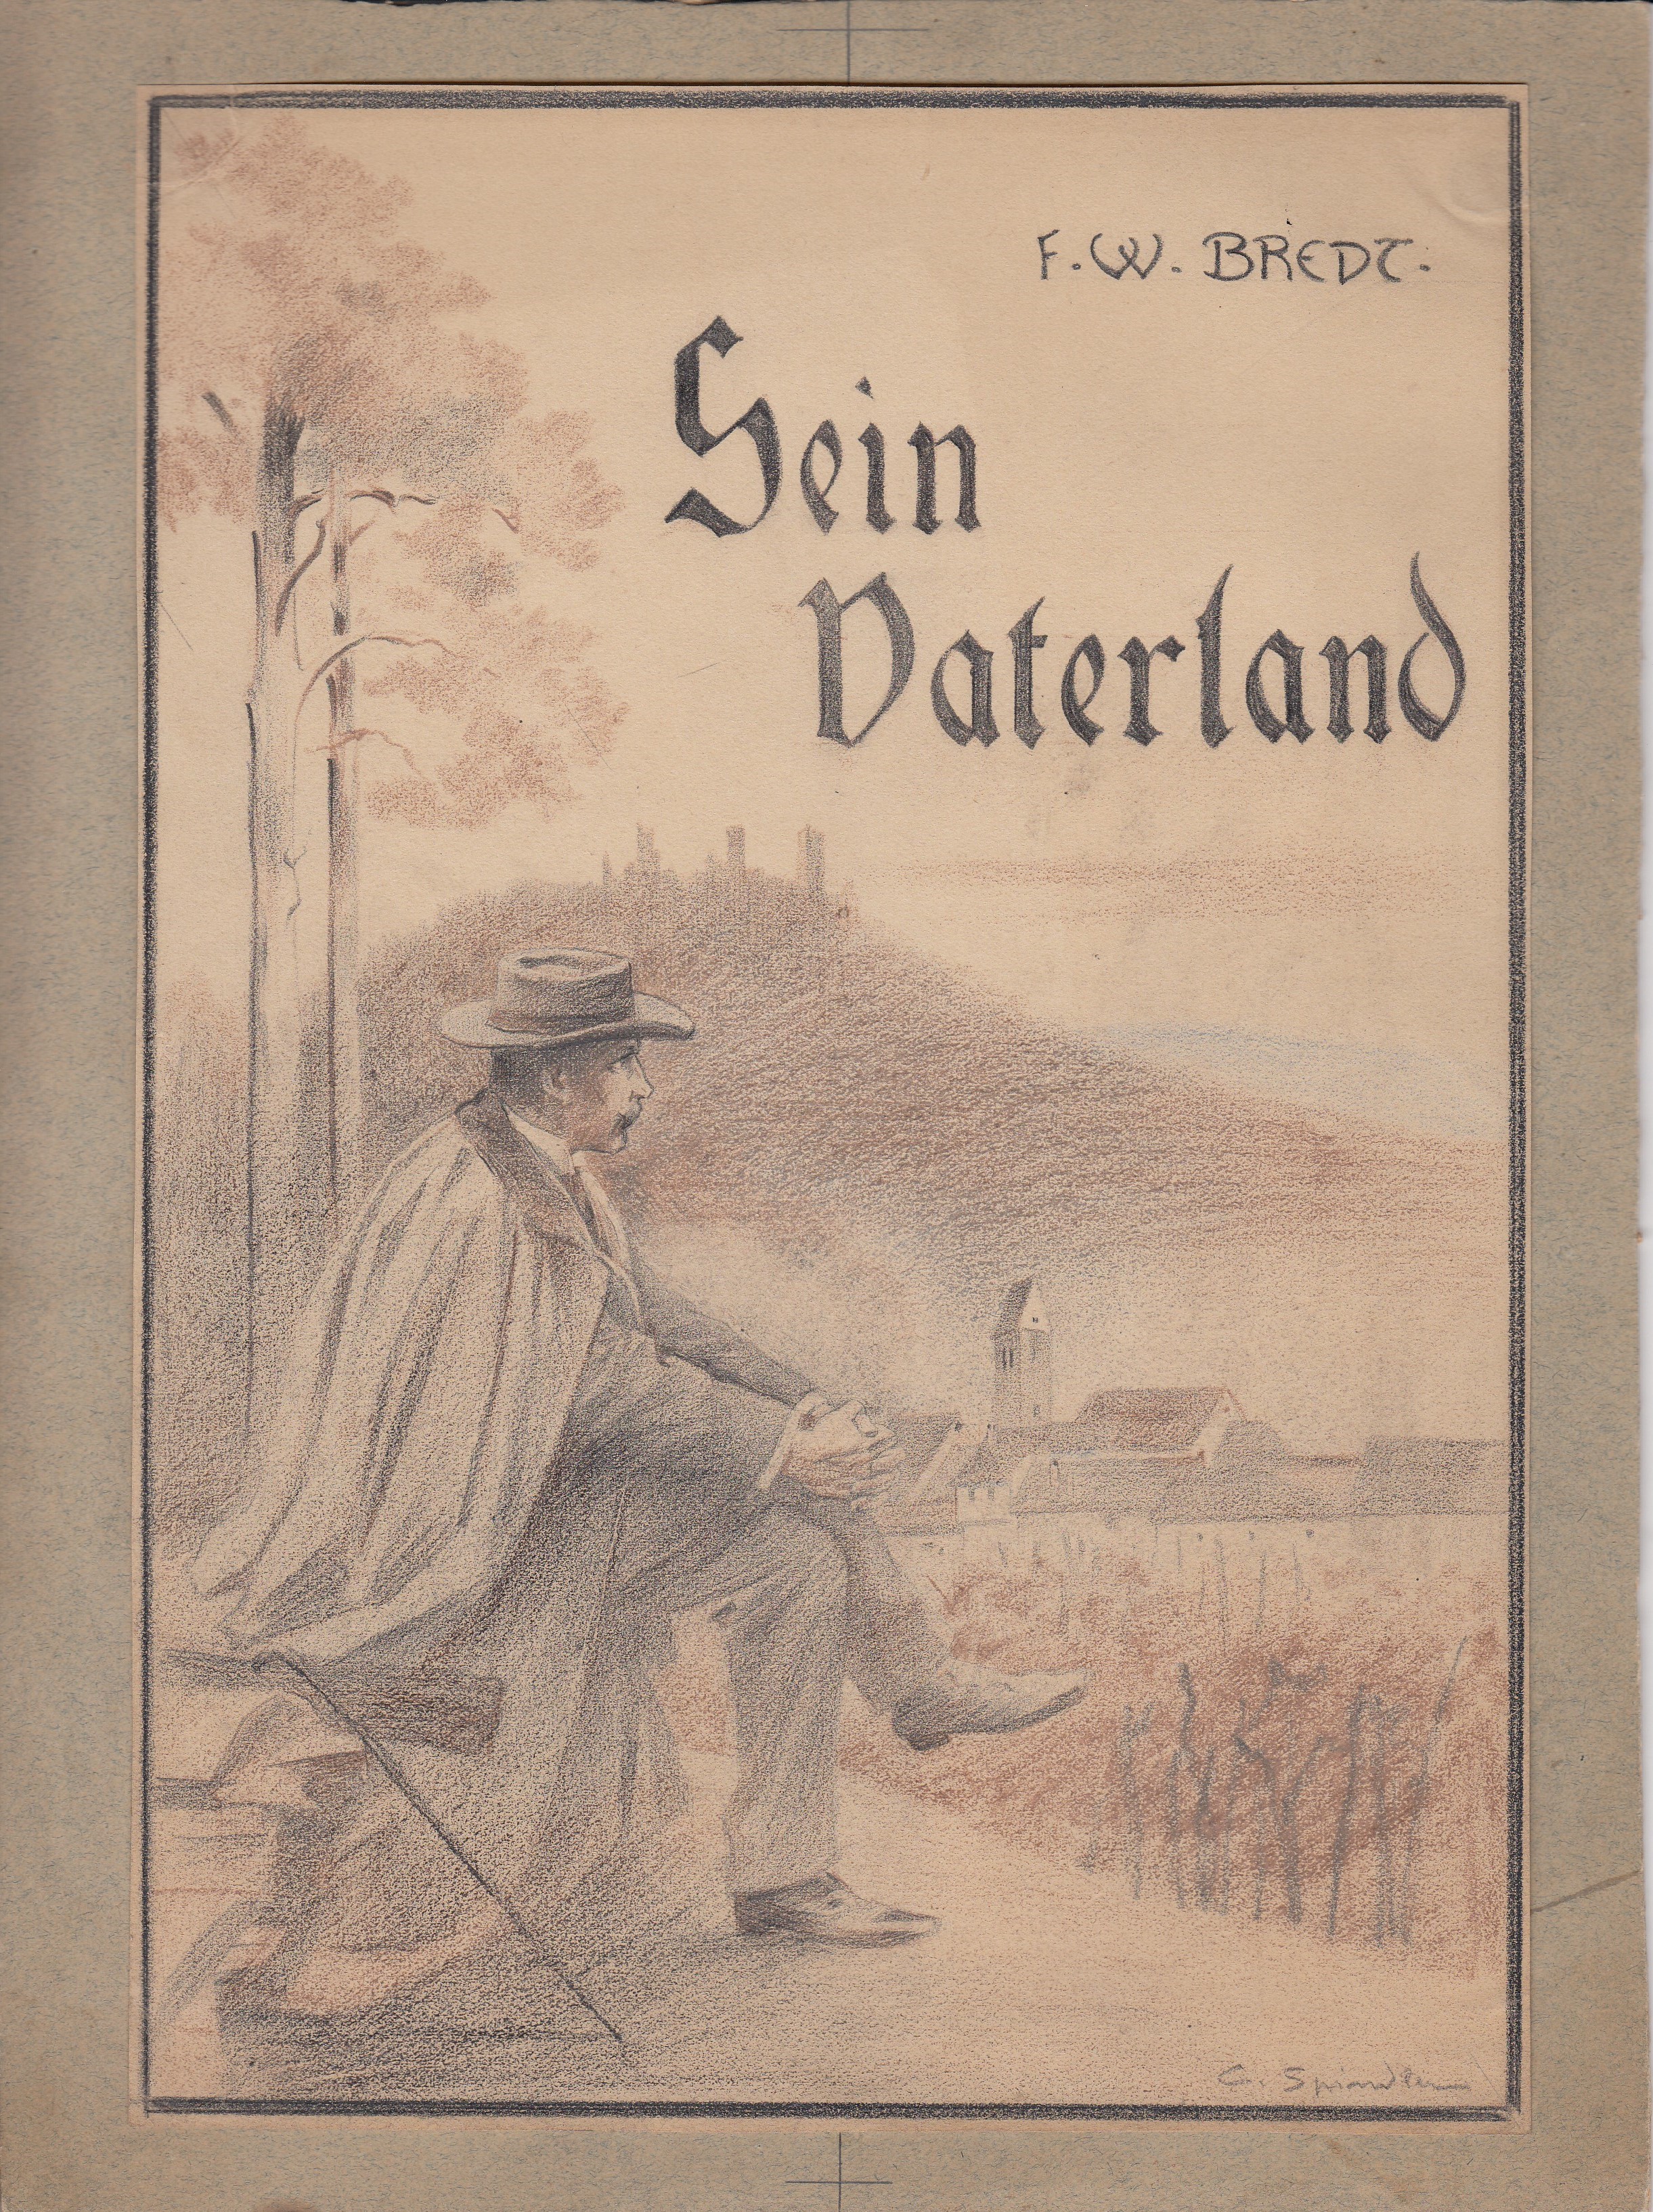 Zeichnung zu: "Sein Vaterland" von F. W. Bredt ((C) Sammlung Bergischer Geschichtsverein e.V. CC BY-NC)